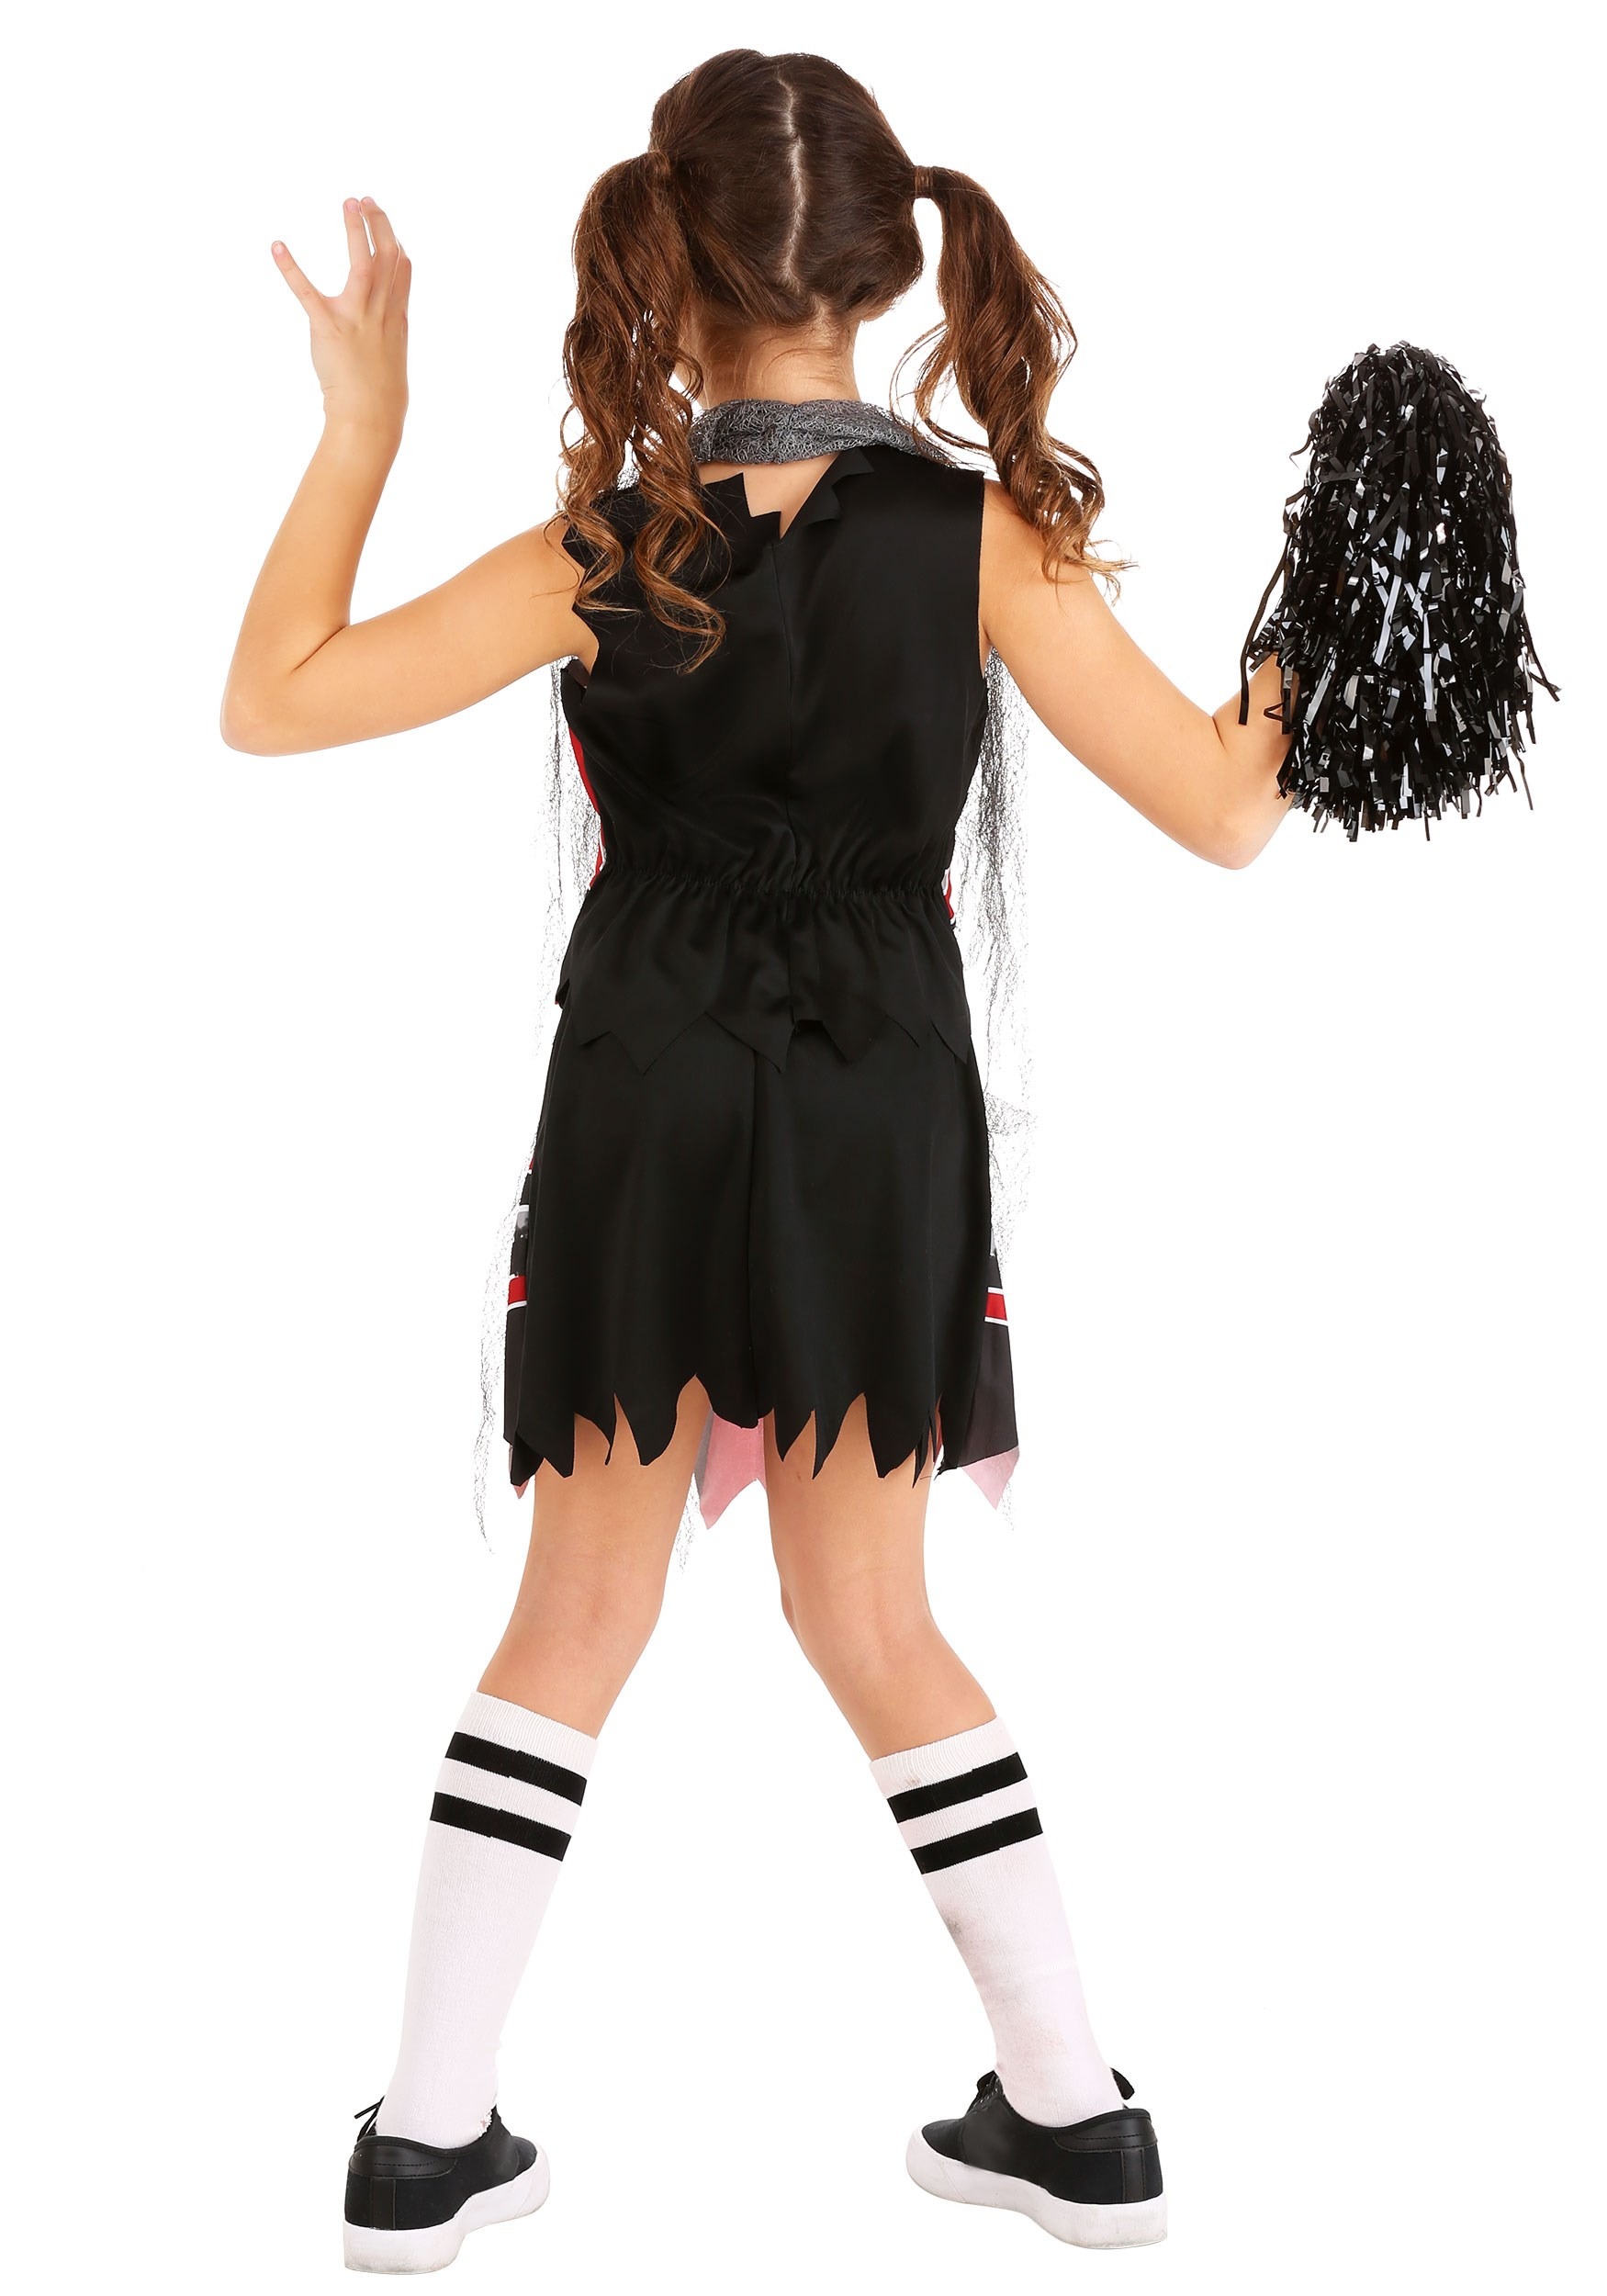 Spiritless Cheerleader Costume For Girls